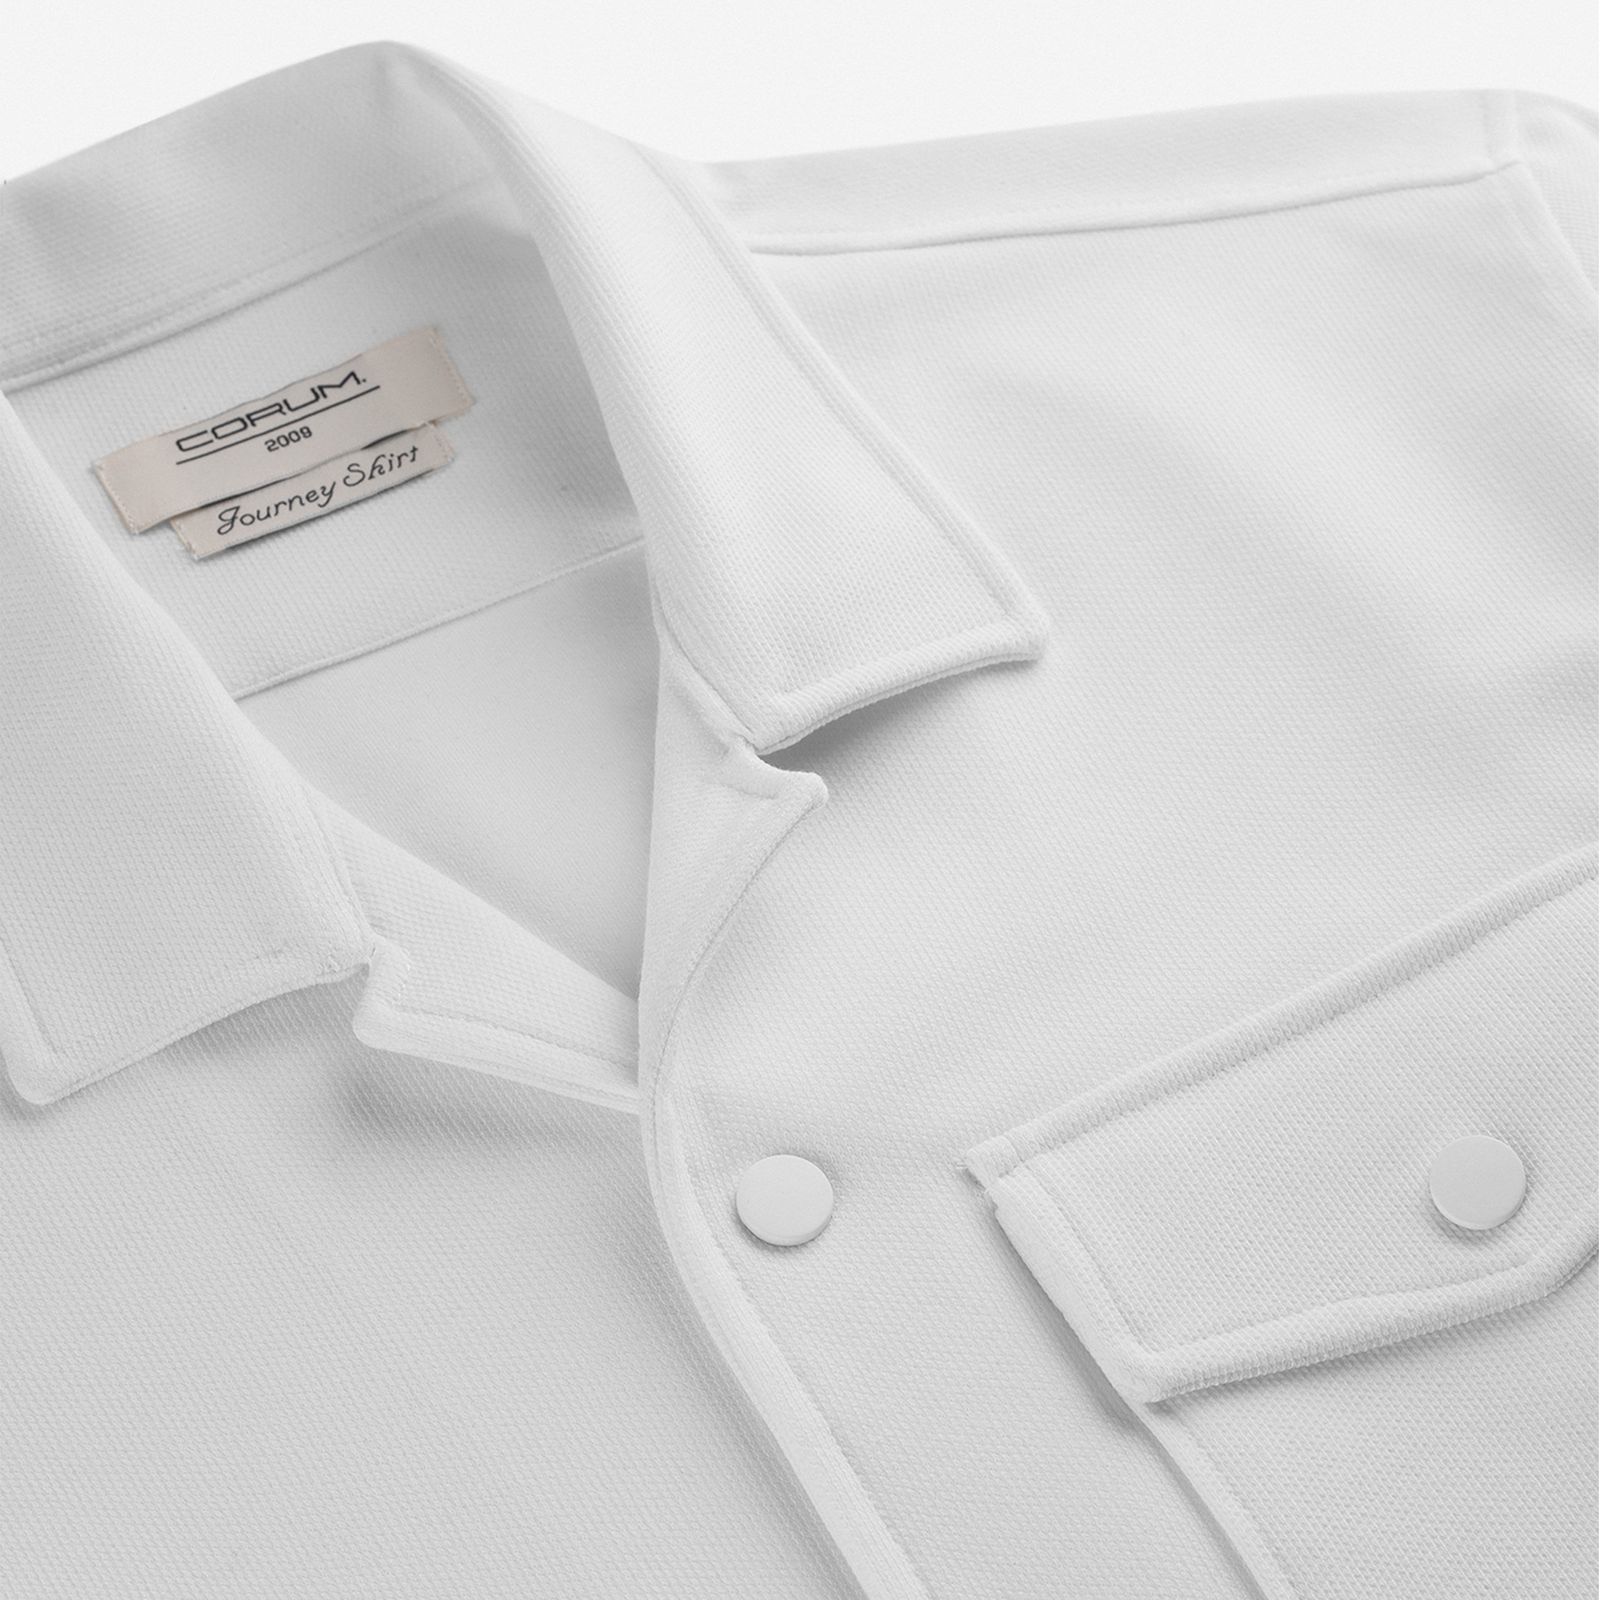 پیراهن آستین بلند مردانه کروم مدل تک جیب 2310111 -  - 3